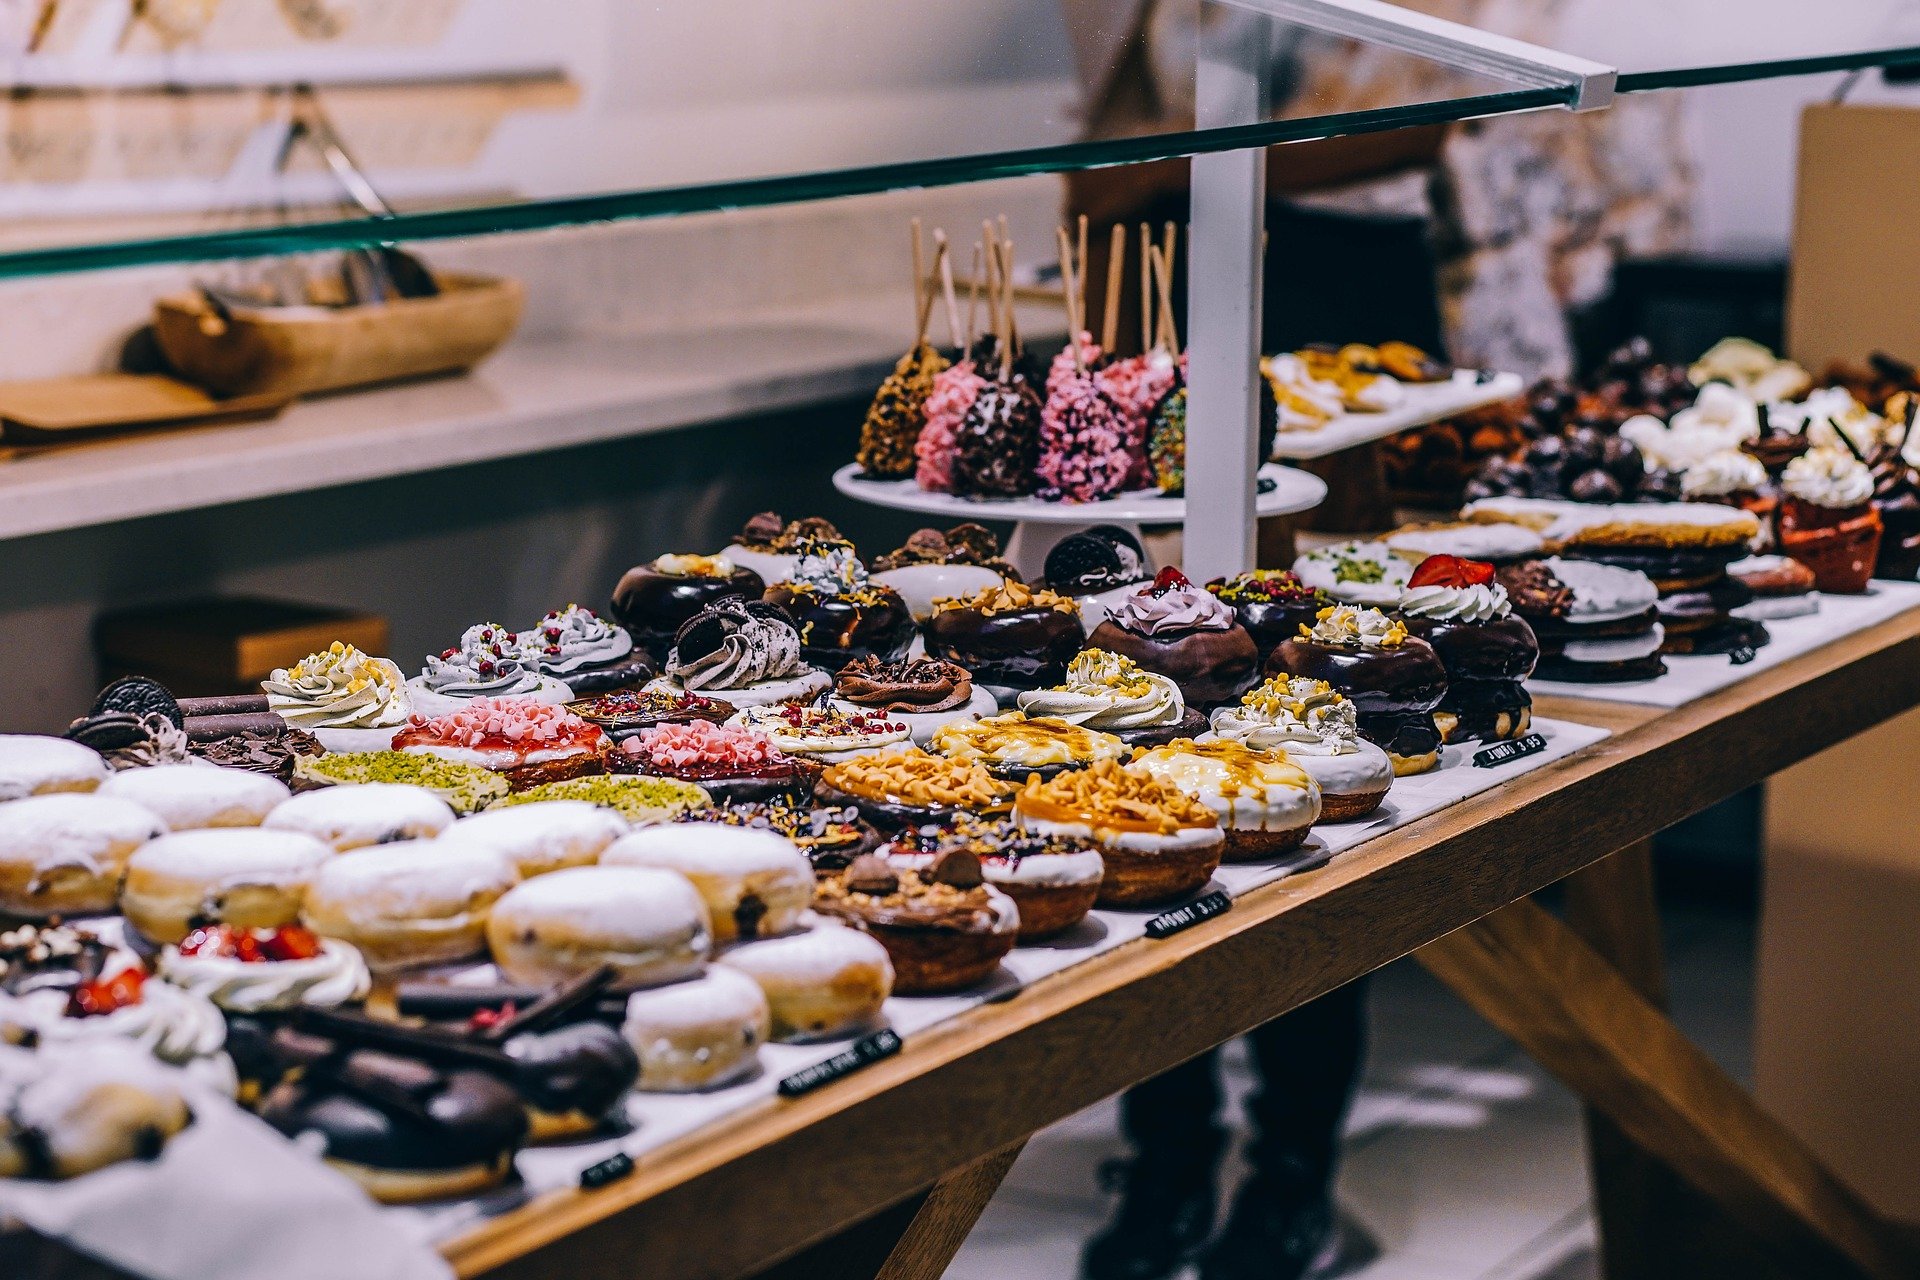 La pastelería ha experimentado una gran evolución en todo tipo de alternativas al azúcar